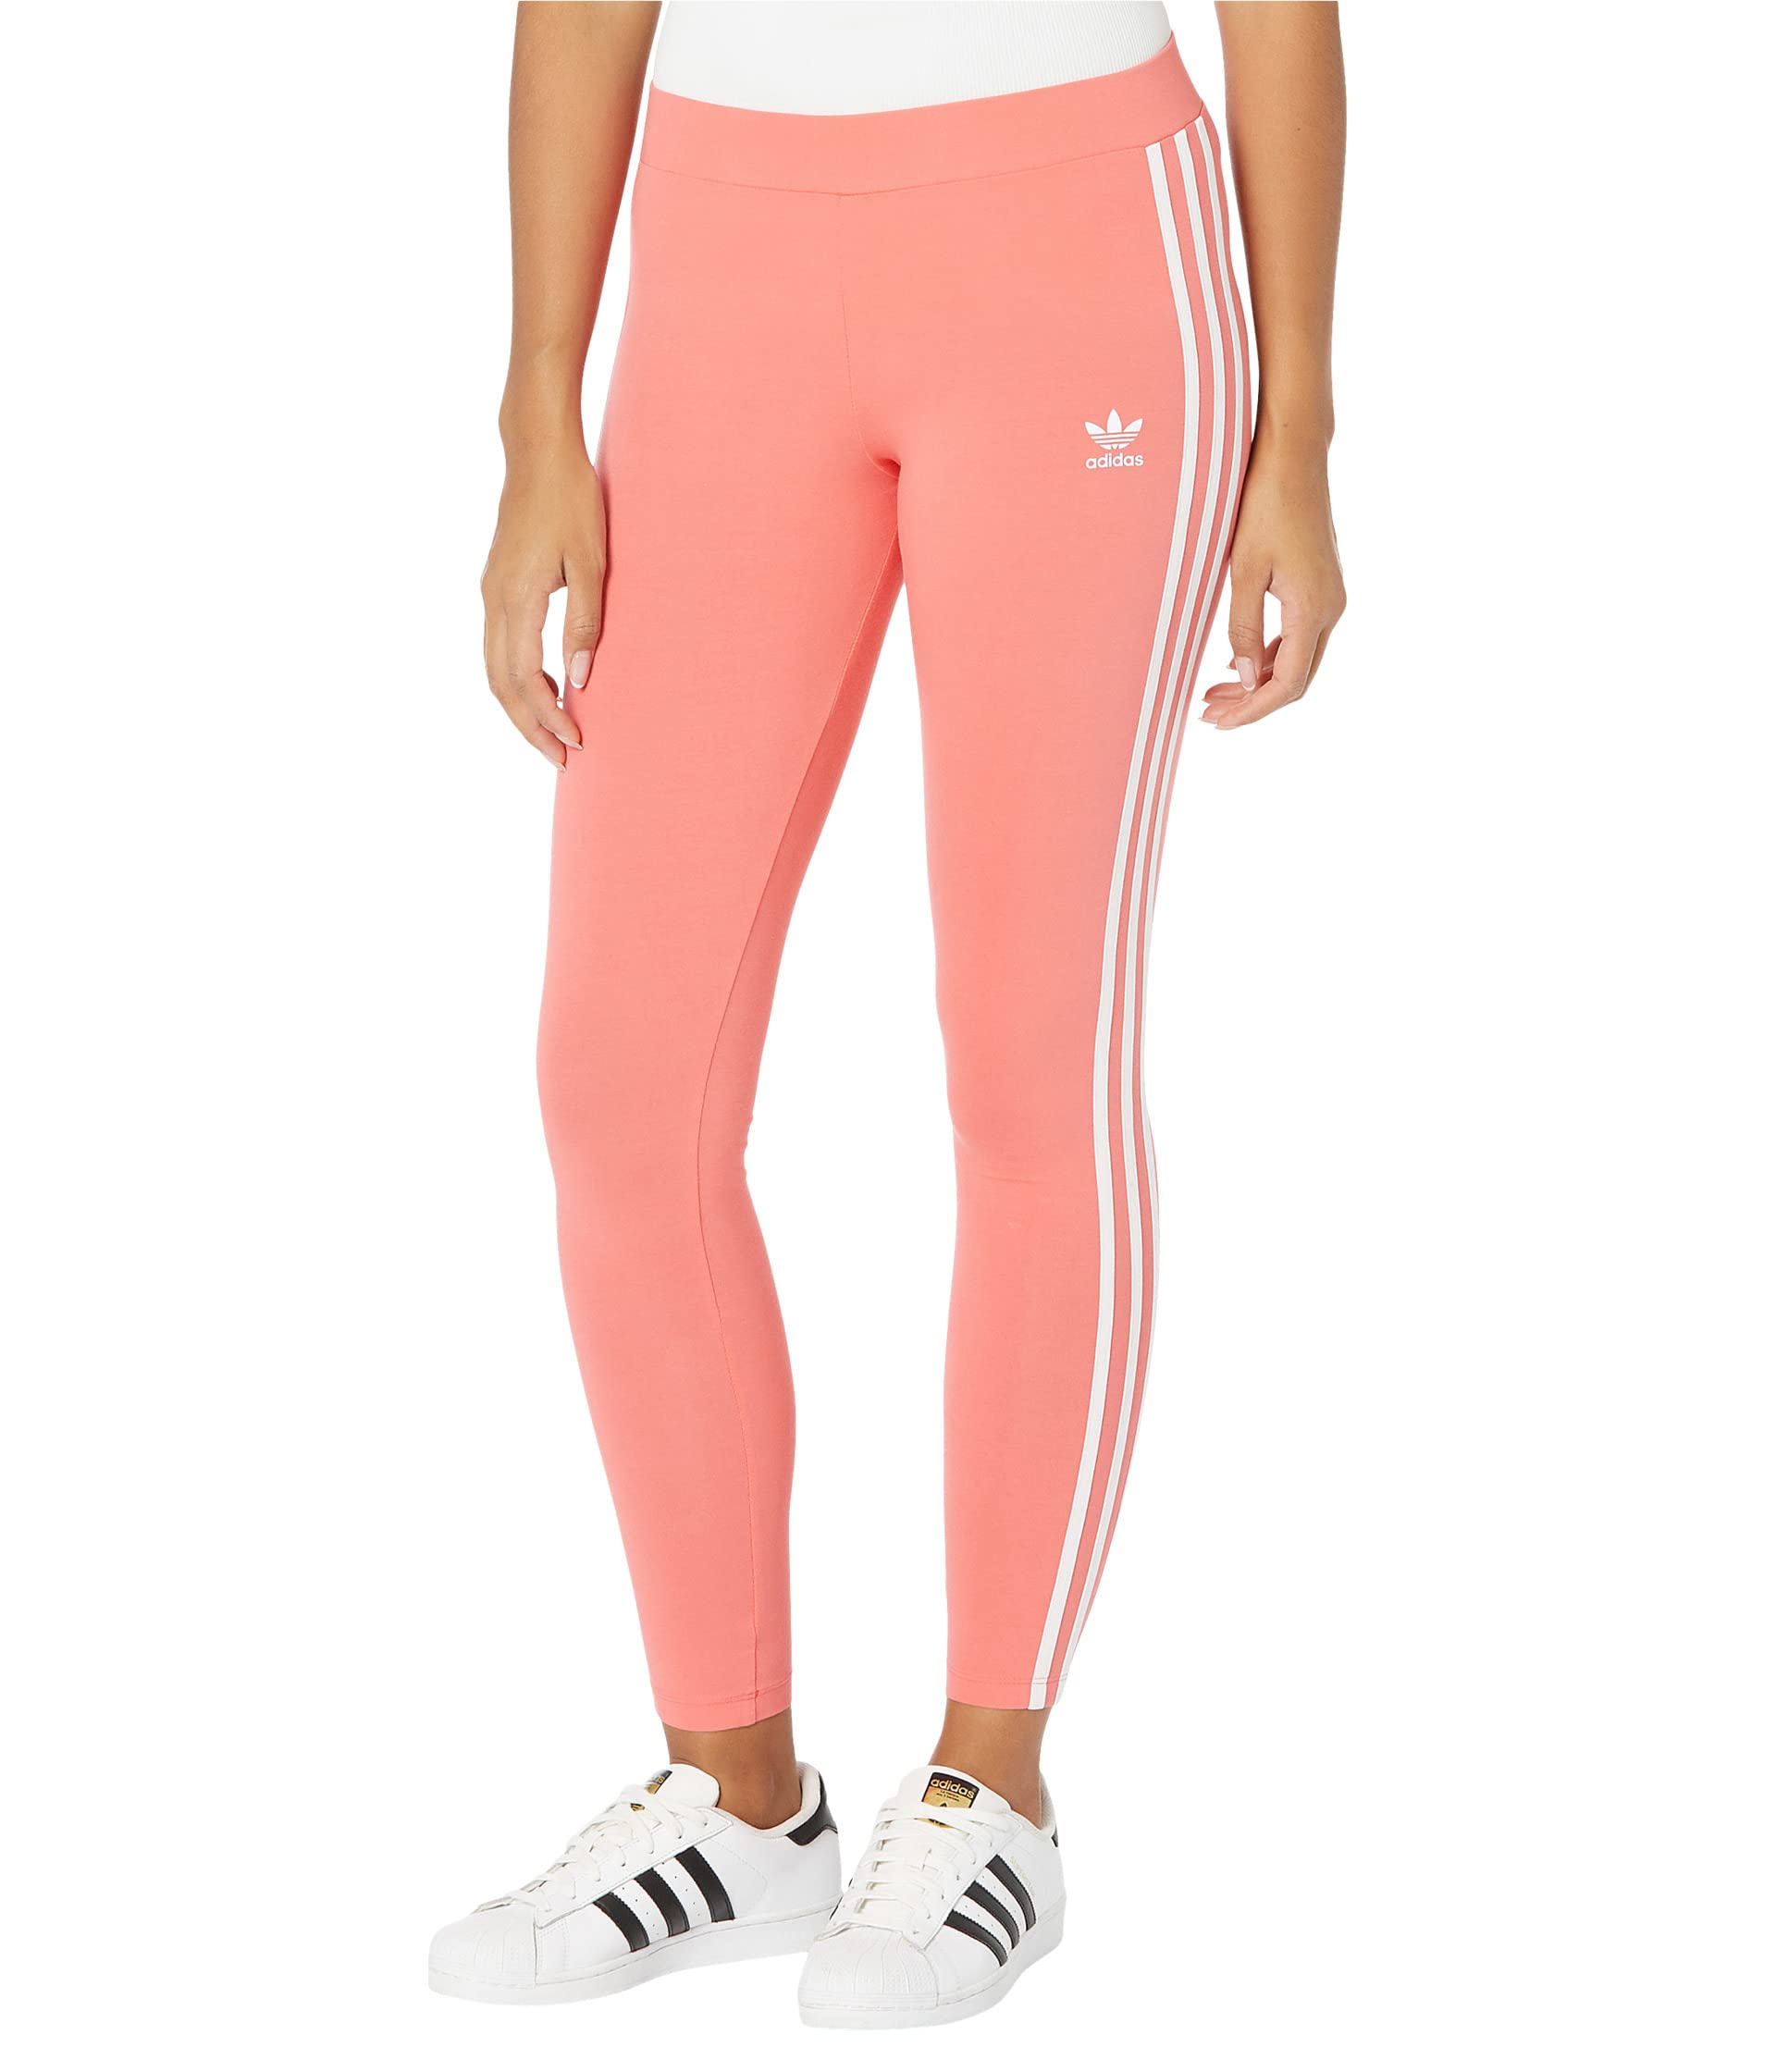 Женские брюки Adidas Originals 3 Stripes, розовый костюм hf1964 adidas ibossumset semi turbo 68